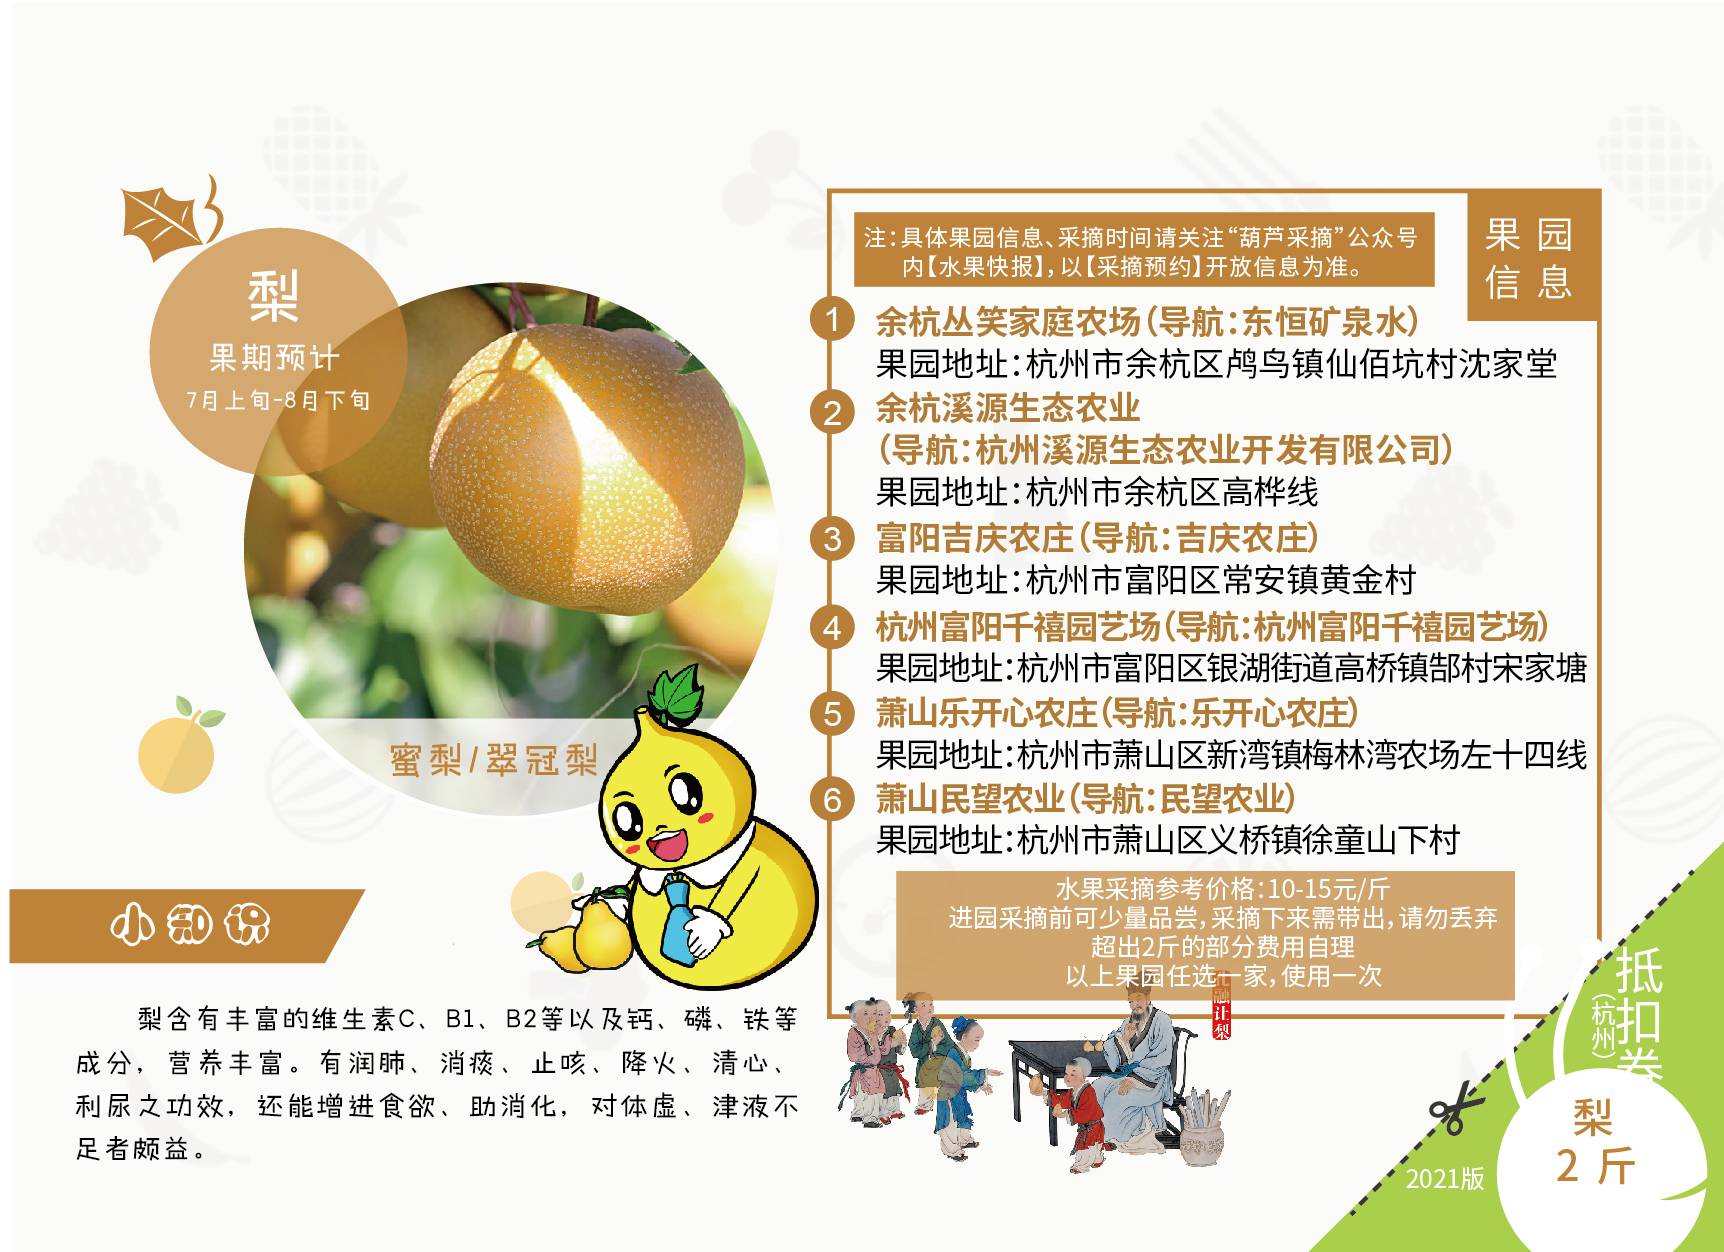 【杭州】【修改版】全新上线！199元抢总价值1800元的2021杭州经典版水果采摘亲子护照！